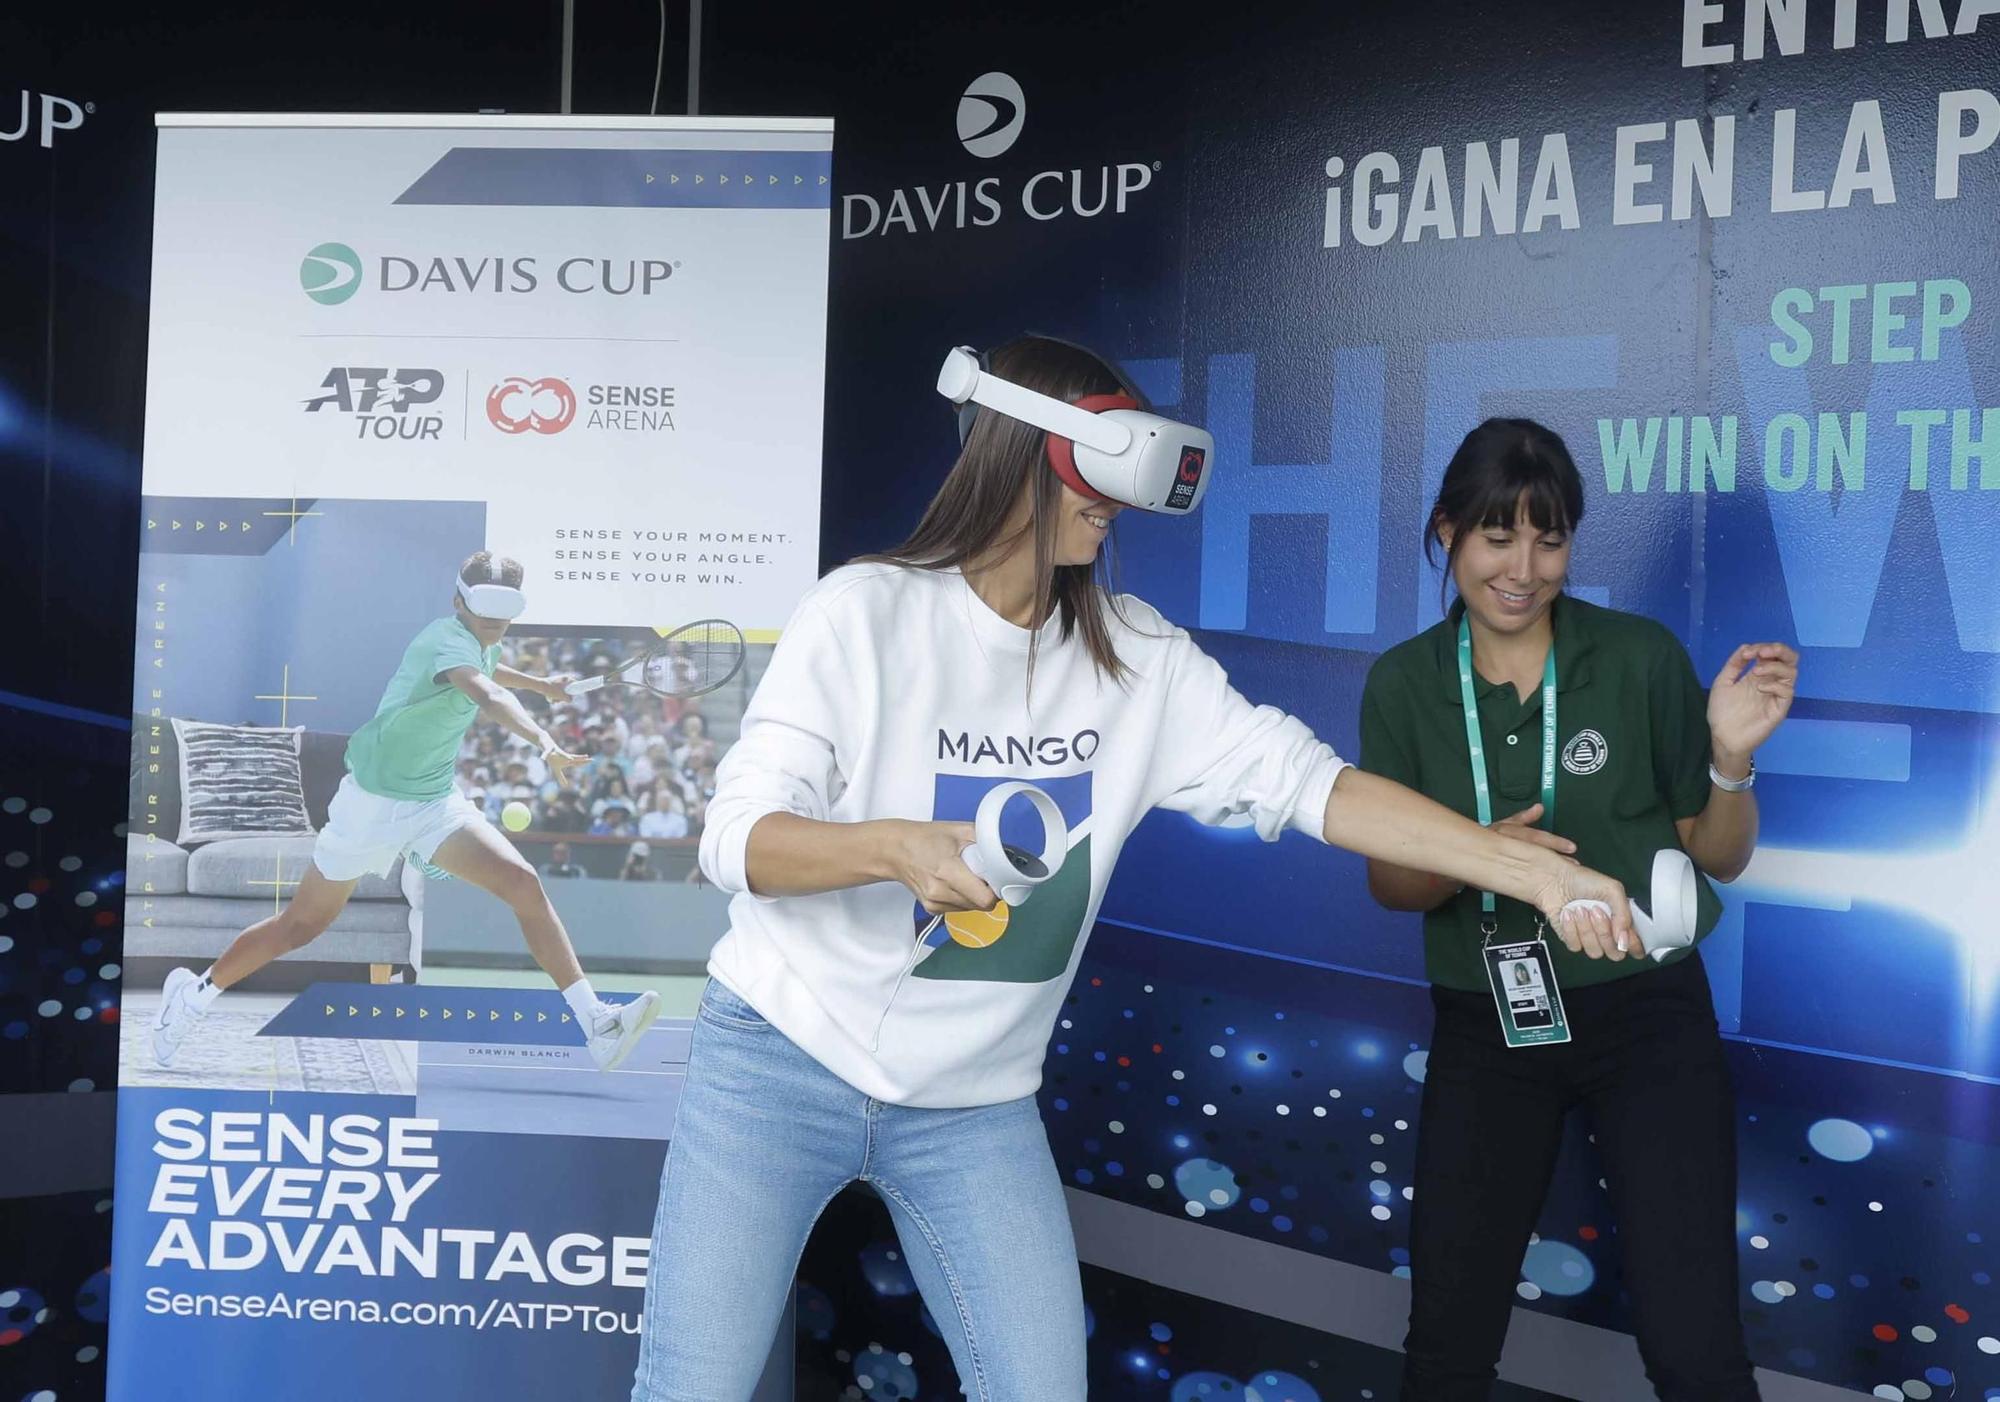 Tercera jornada de Copa Davis entre Rep. Checa y Corea